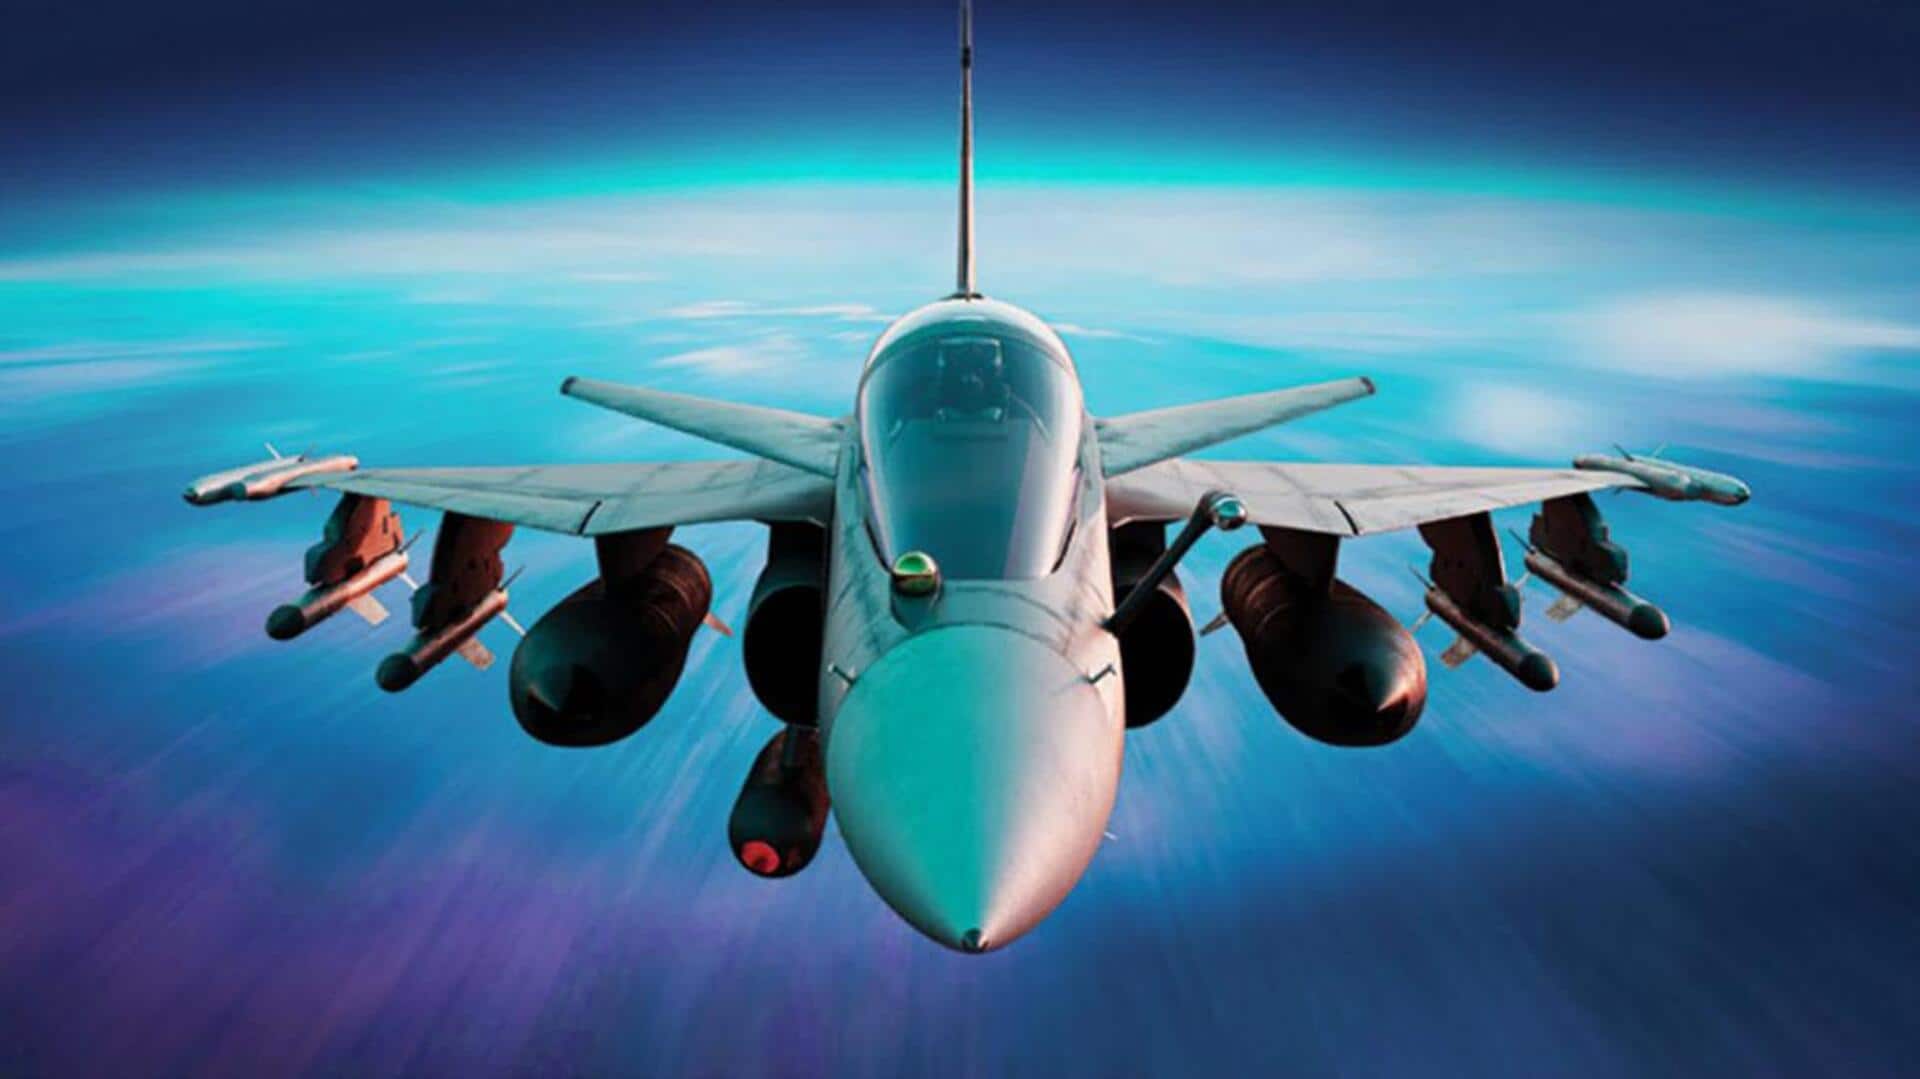 भारतीय वायुसेना 100 तेजस मार्क-1A लड़ाकू विमान खरीदेगी, मिग विमानों की लेंगे जगह